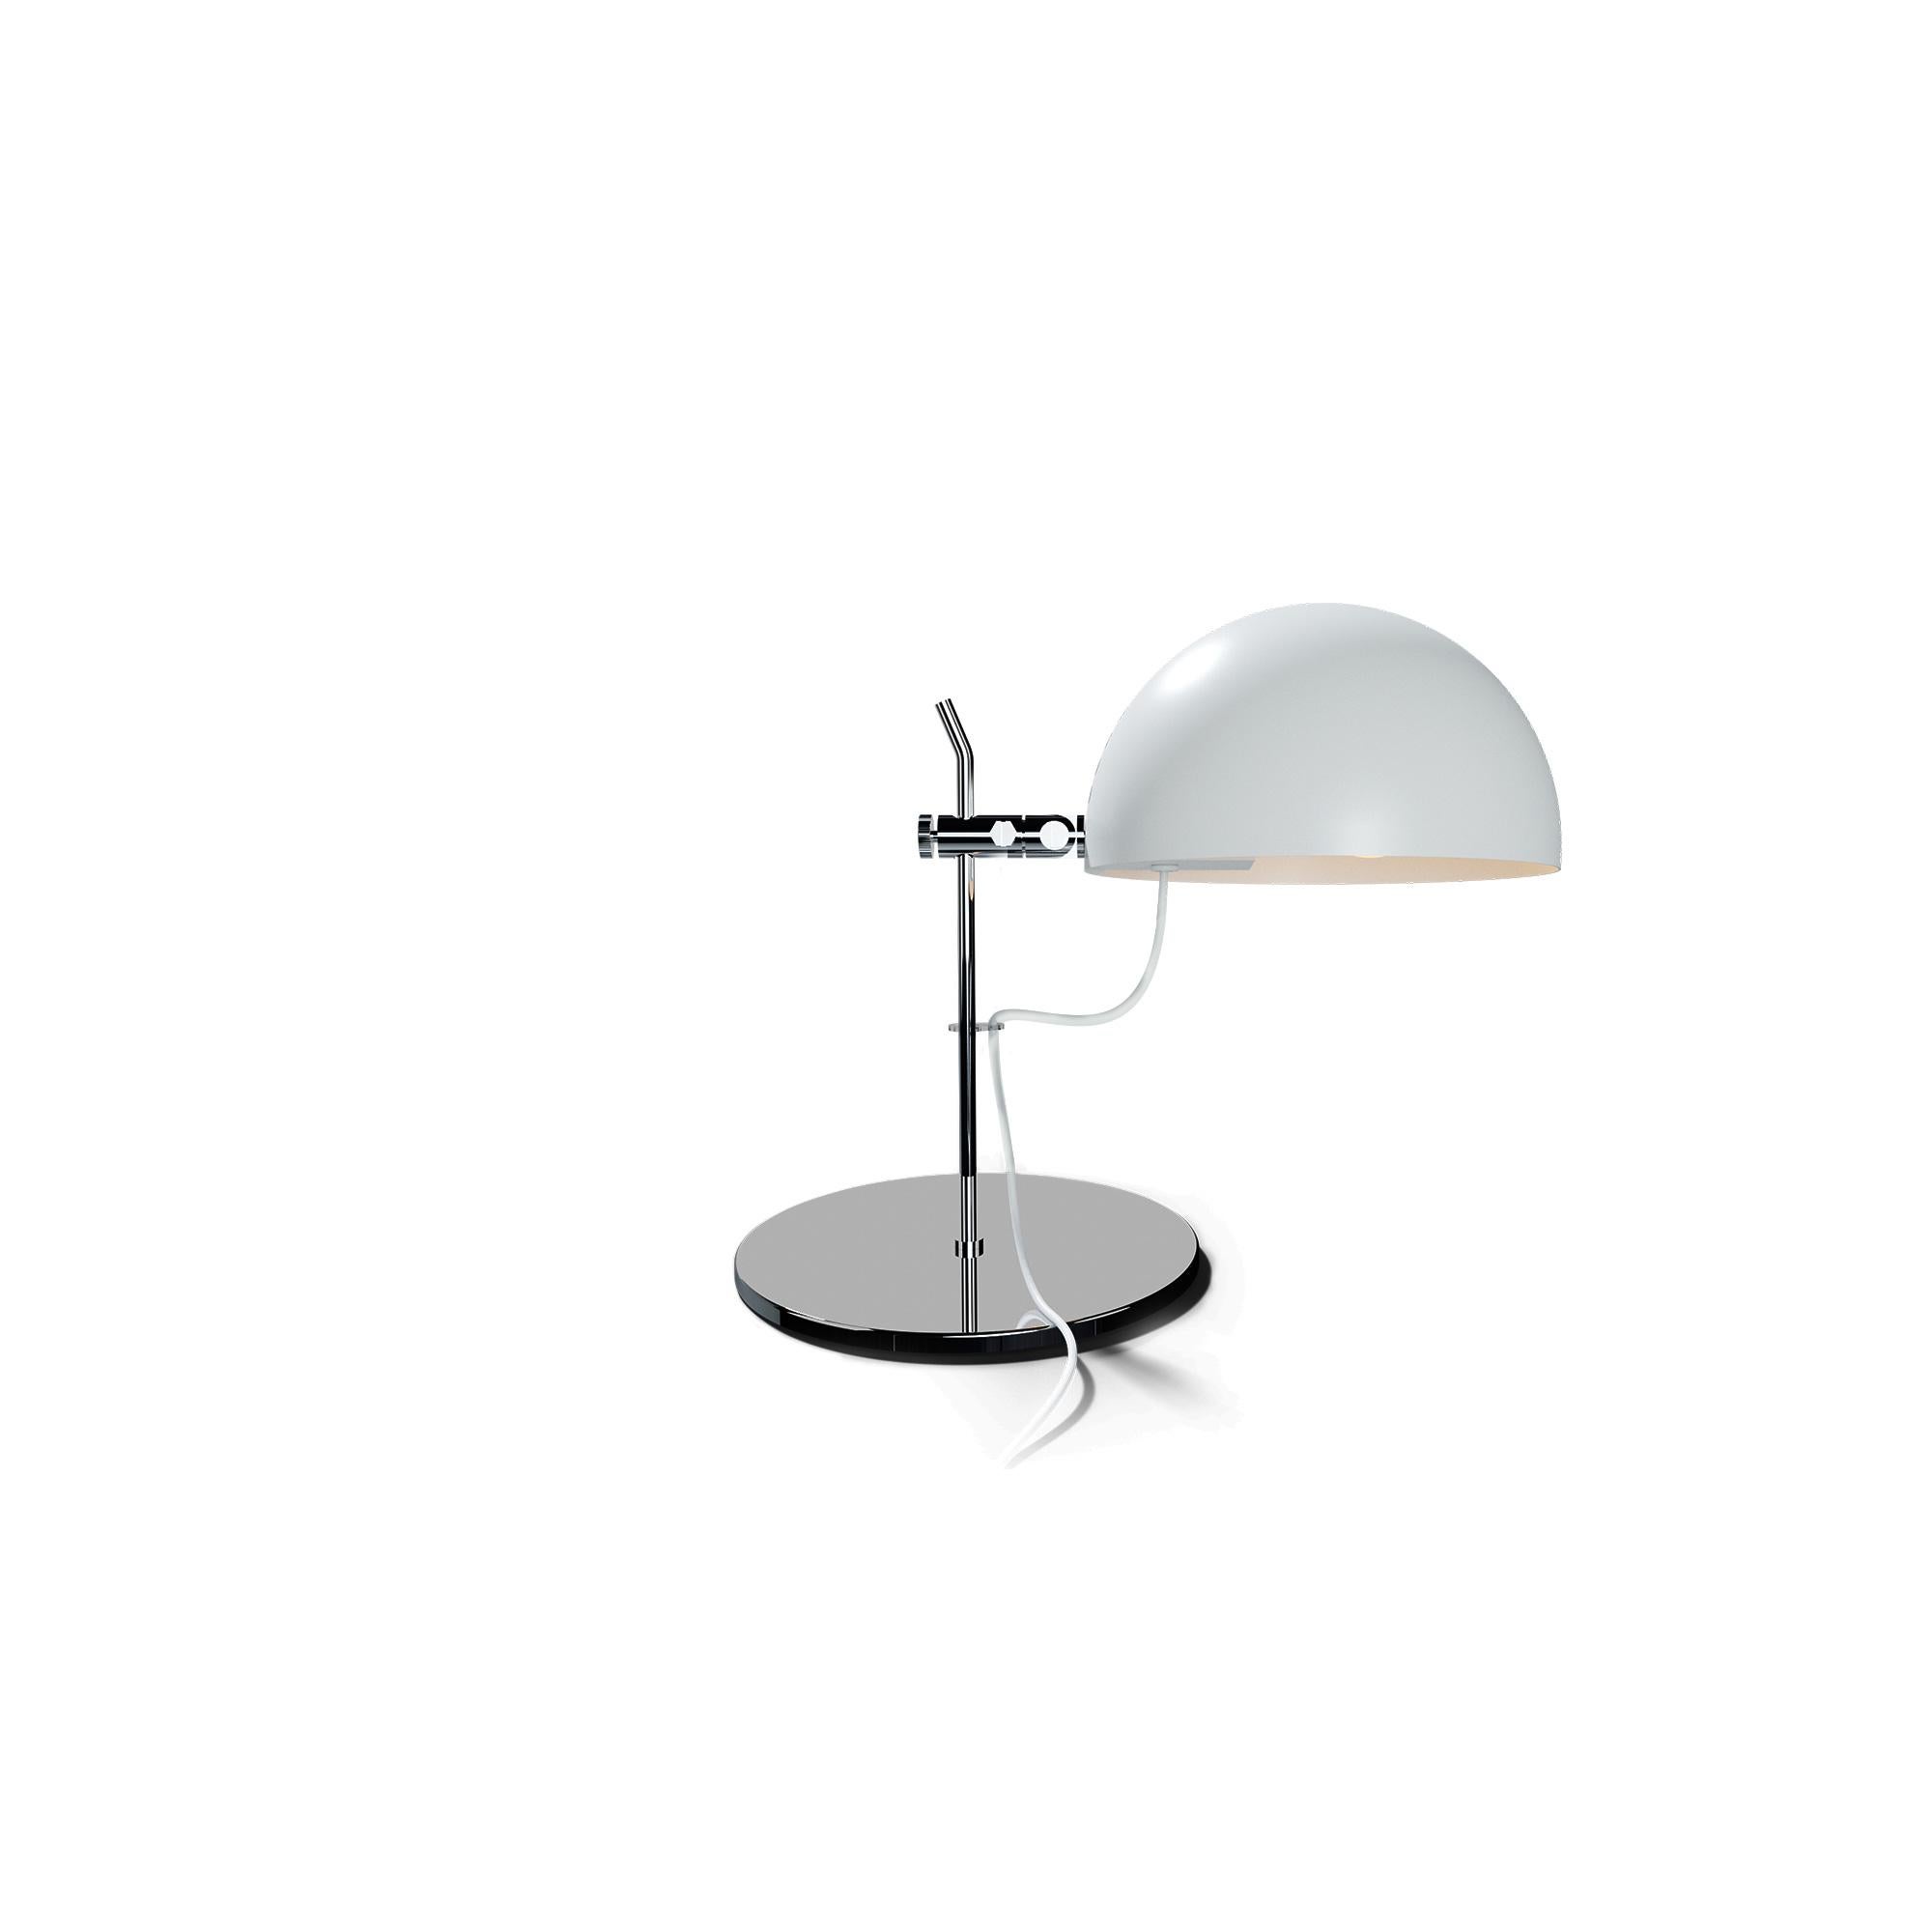 Alain Richard 'A22' Desk Lamp in Orange for Disderot For Sale 5